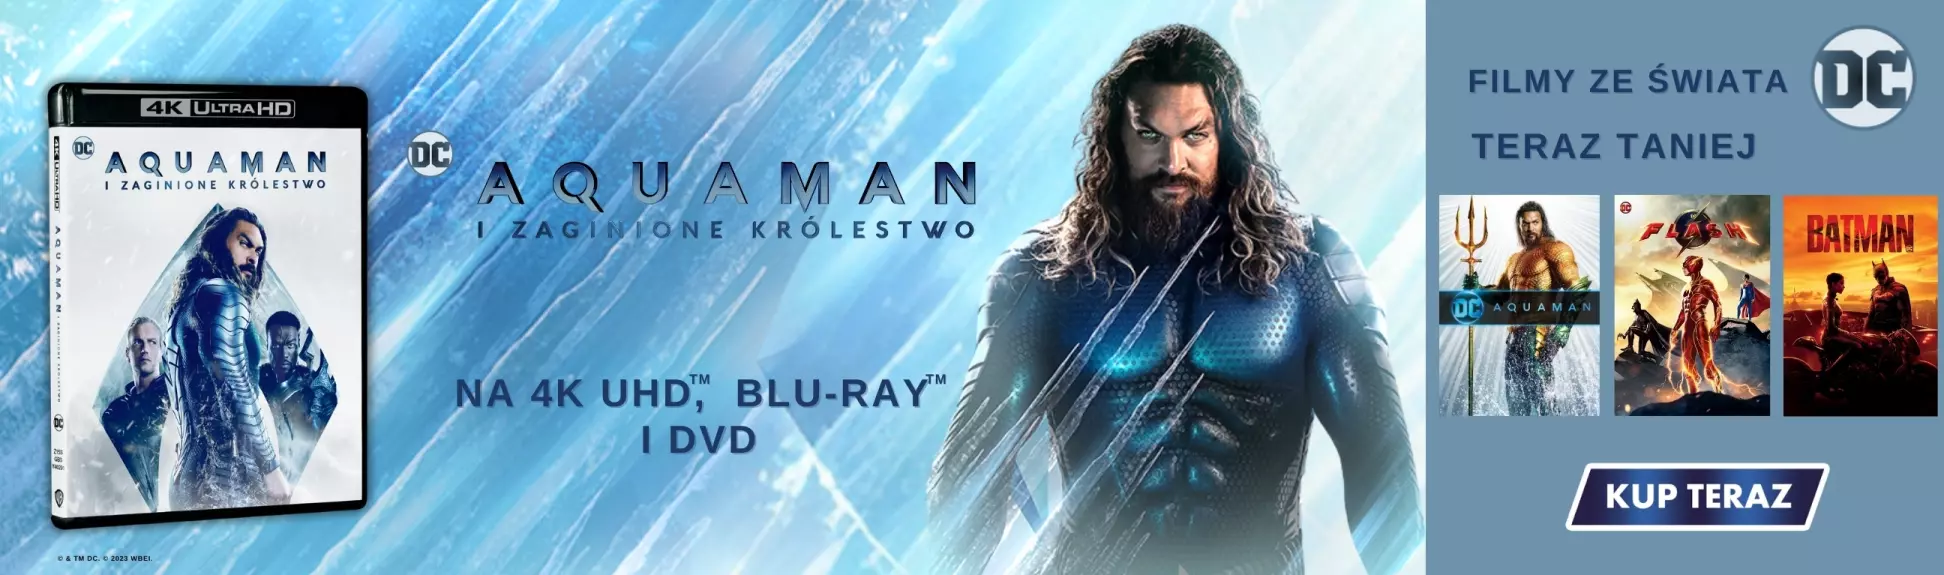 "Aquaman i zaginione królestwo" premierana DVD i Blu-Ray!